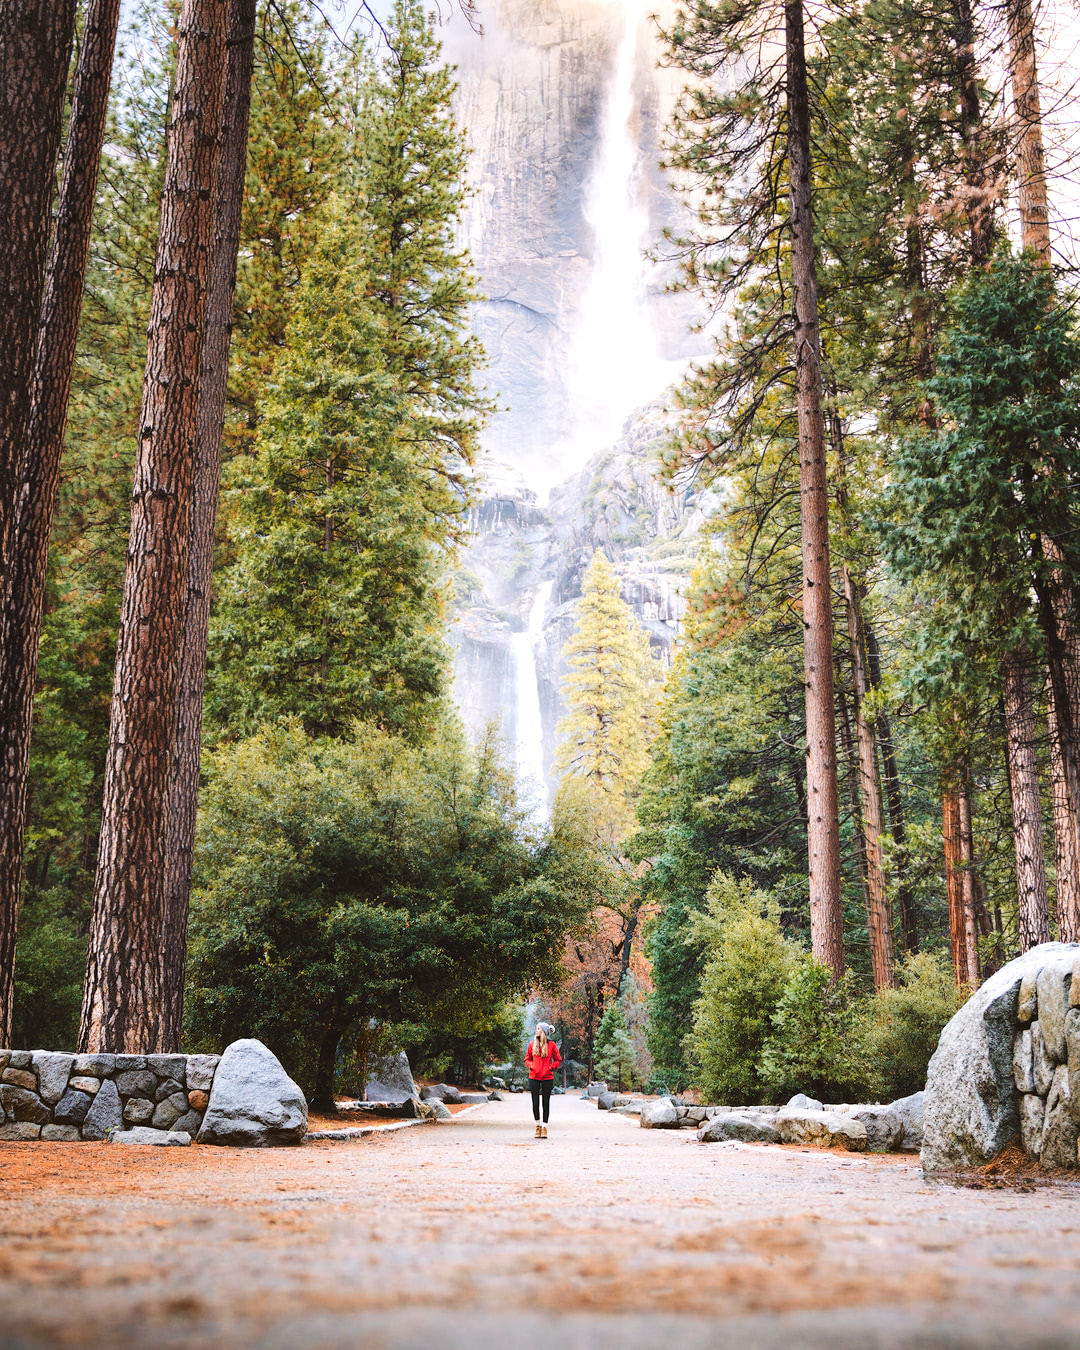 The Ultimate Guide to Exploring Yosemite National Park - Yosemite Falls